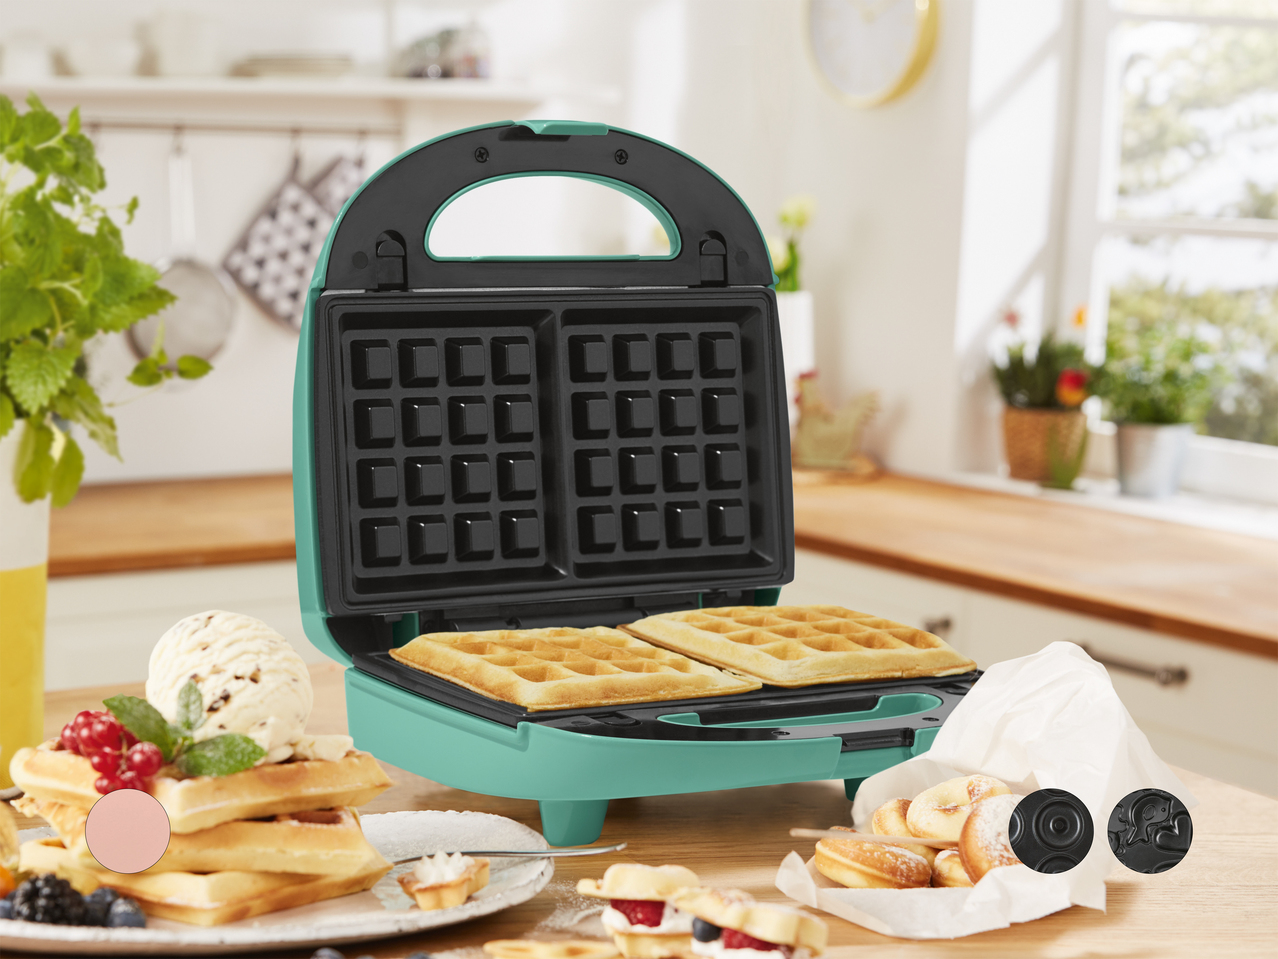 Macchine per waffle con piastre intercambiabili